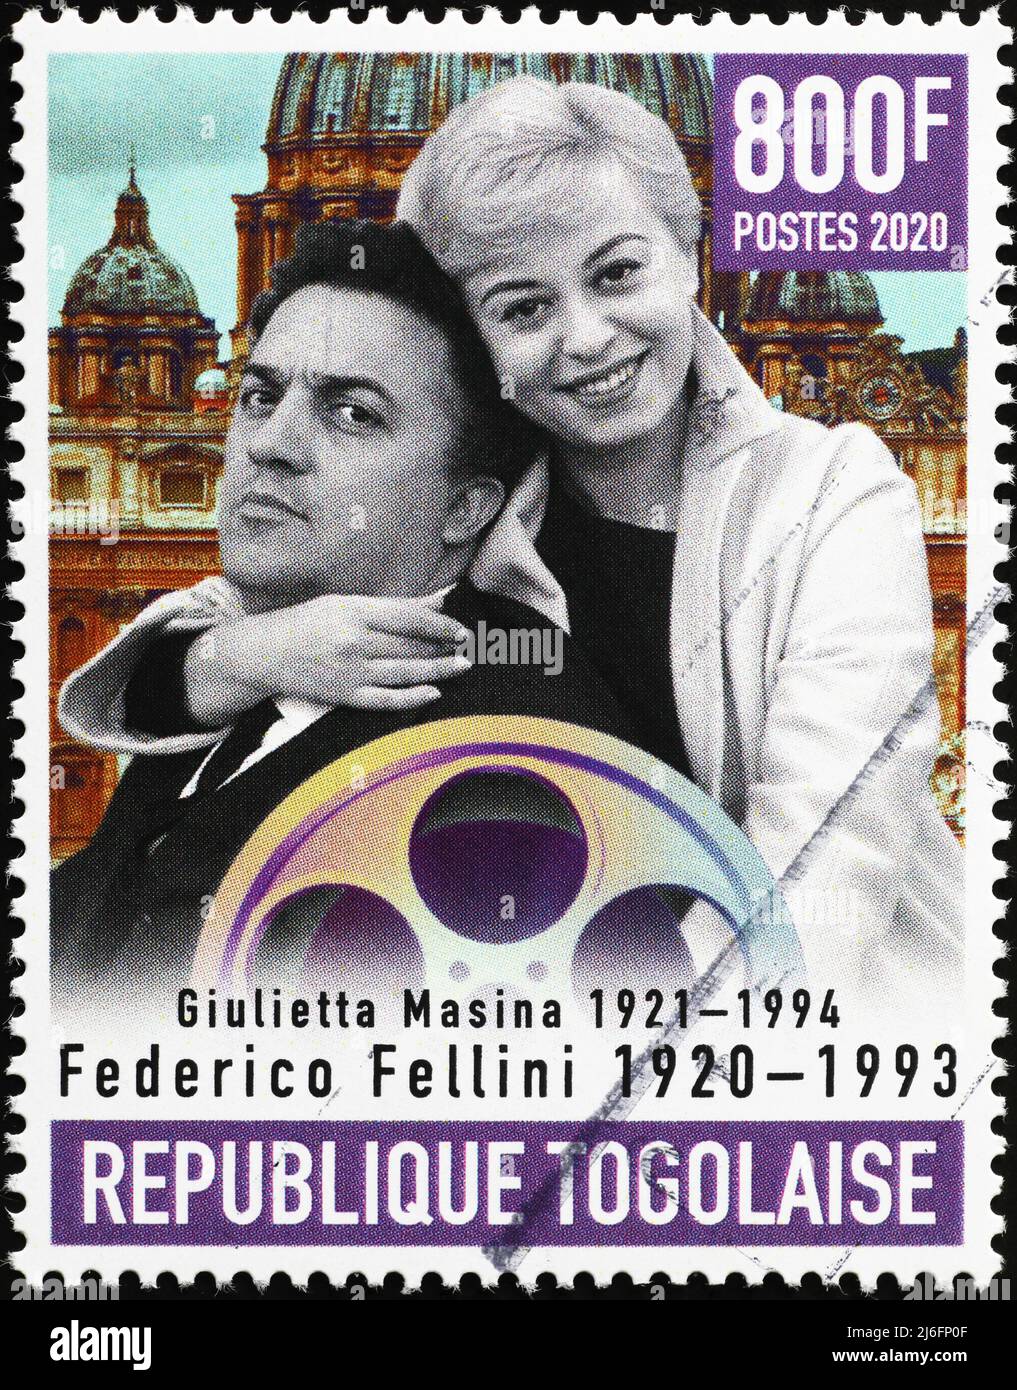 Federico Fellini et Giulietta Masina sur timbre-poste Banque D'Images